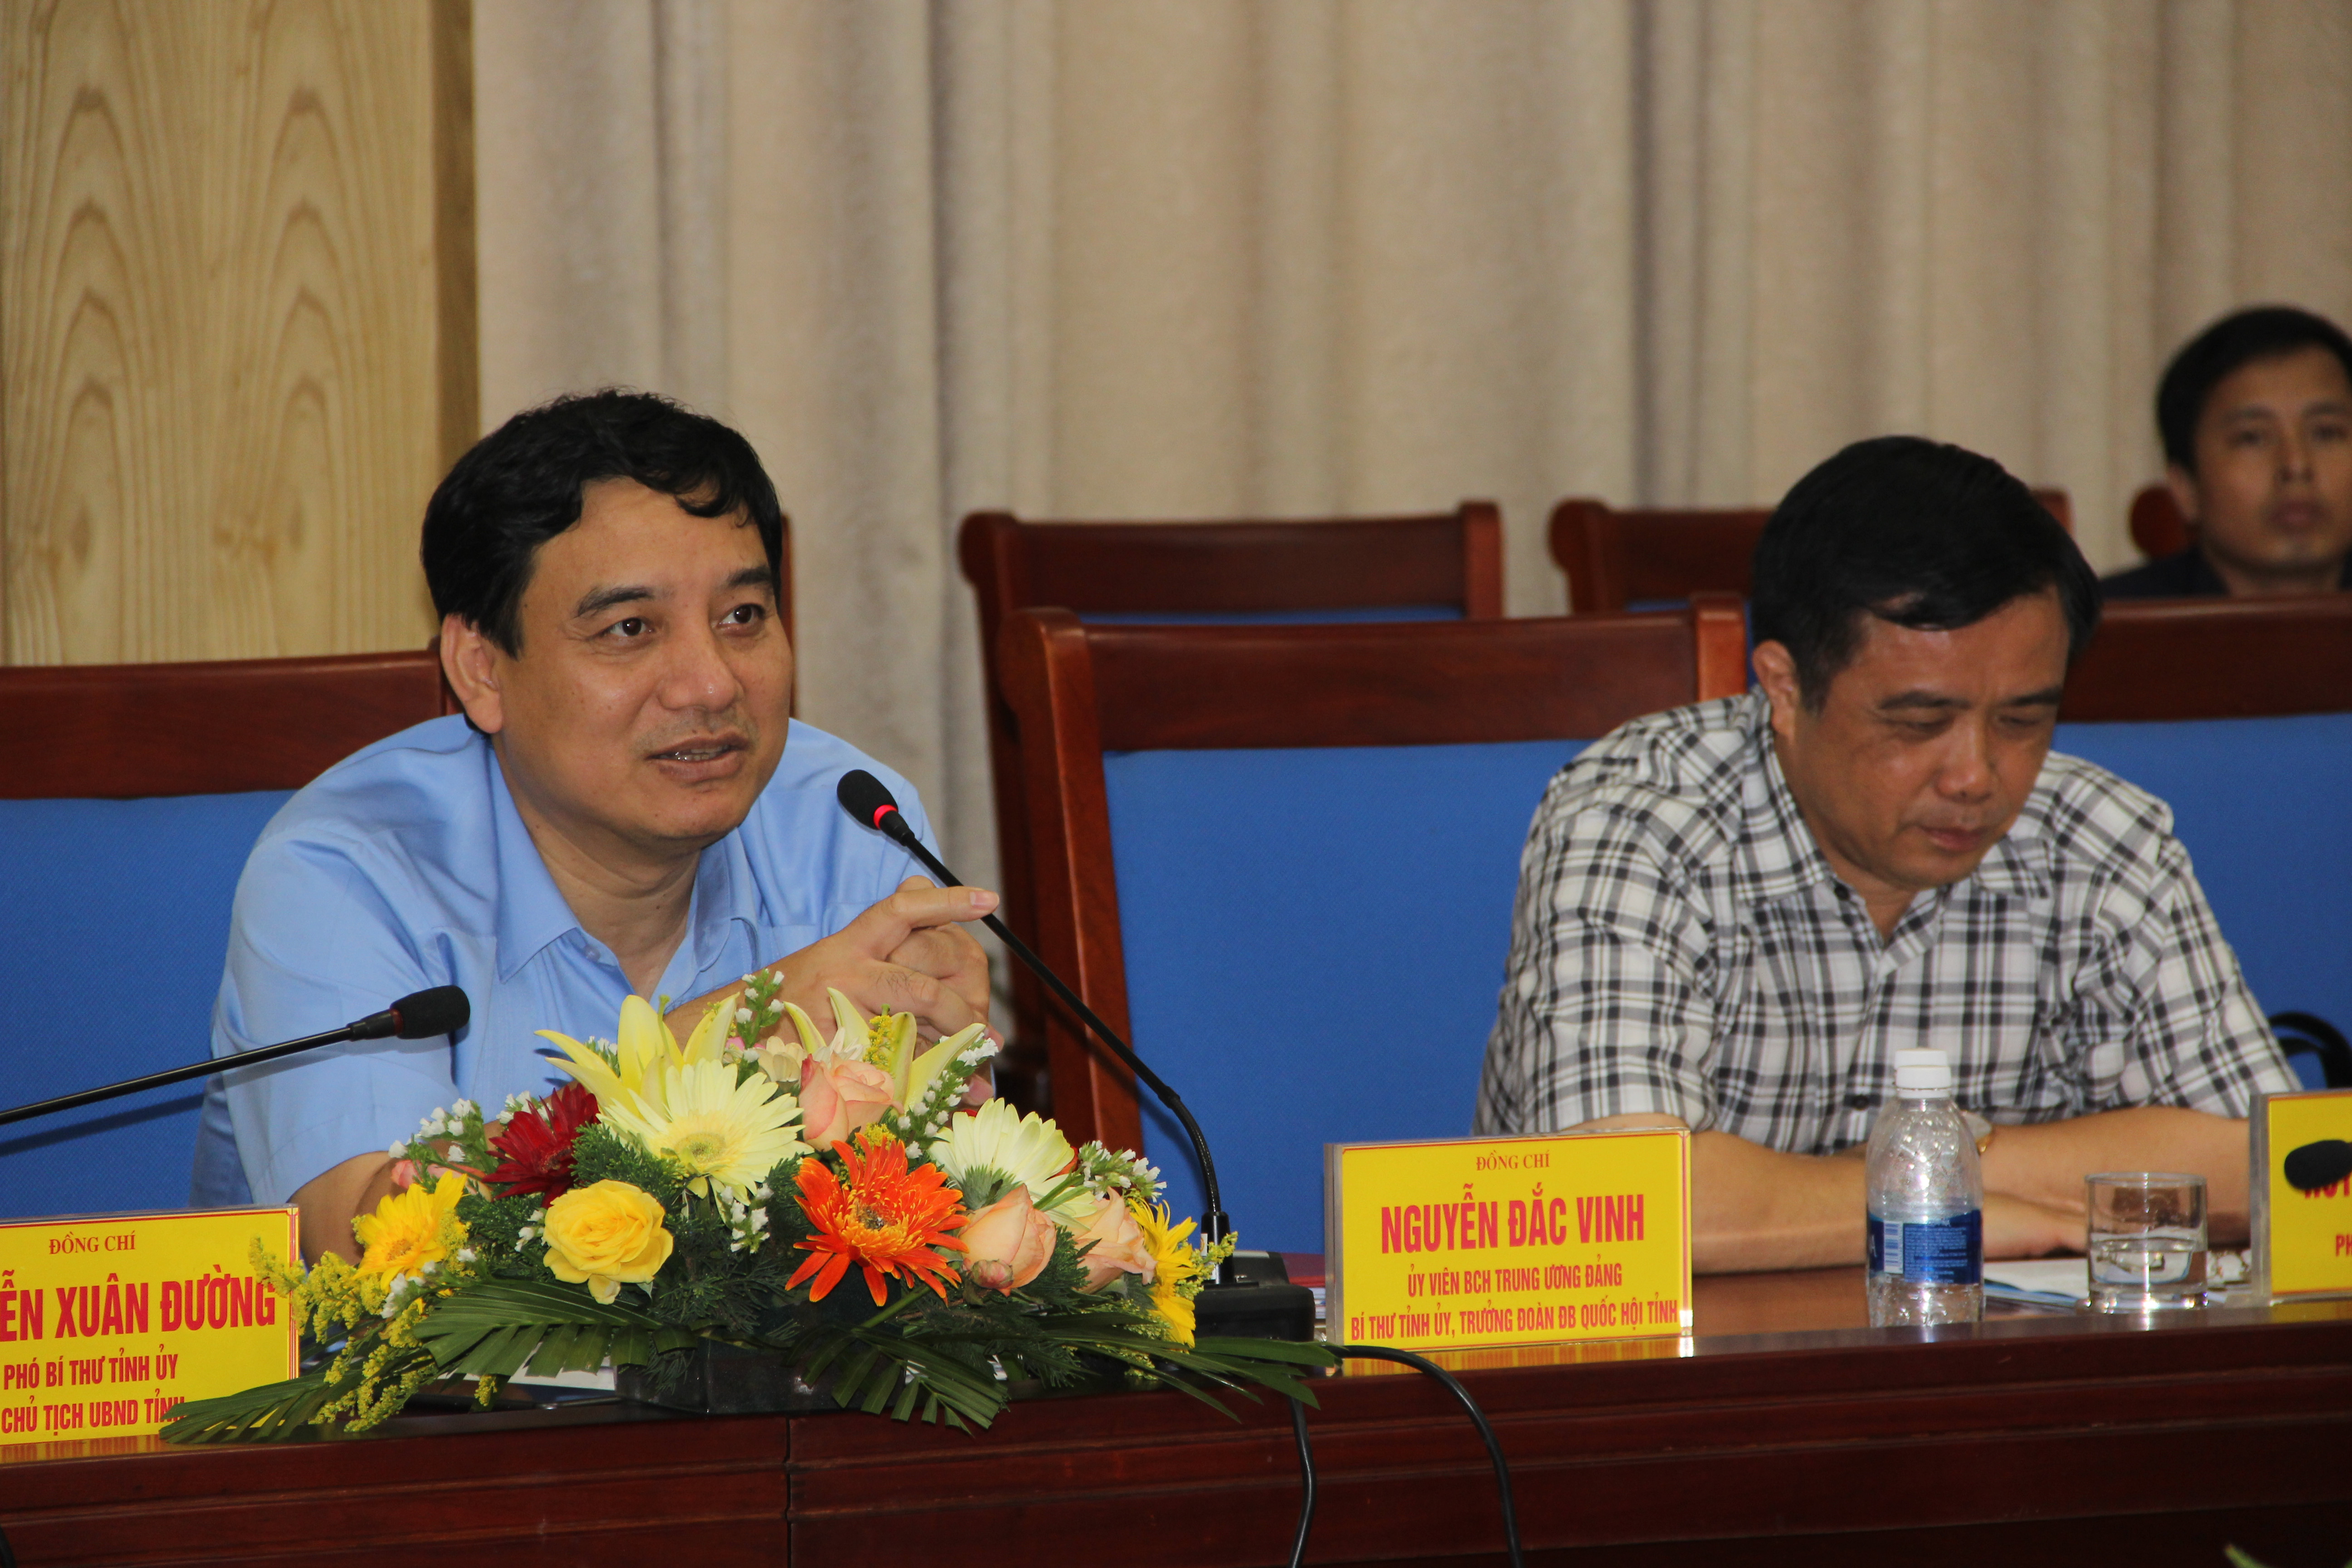 Bí thư Tỉnh ủy Nguyễn Đắc Vinh phát biểu tại buổi làm việc. Ảnh: Phan Quỳnh